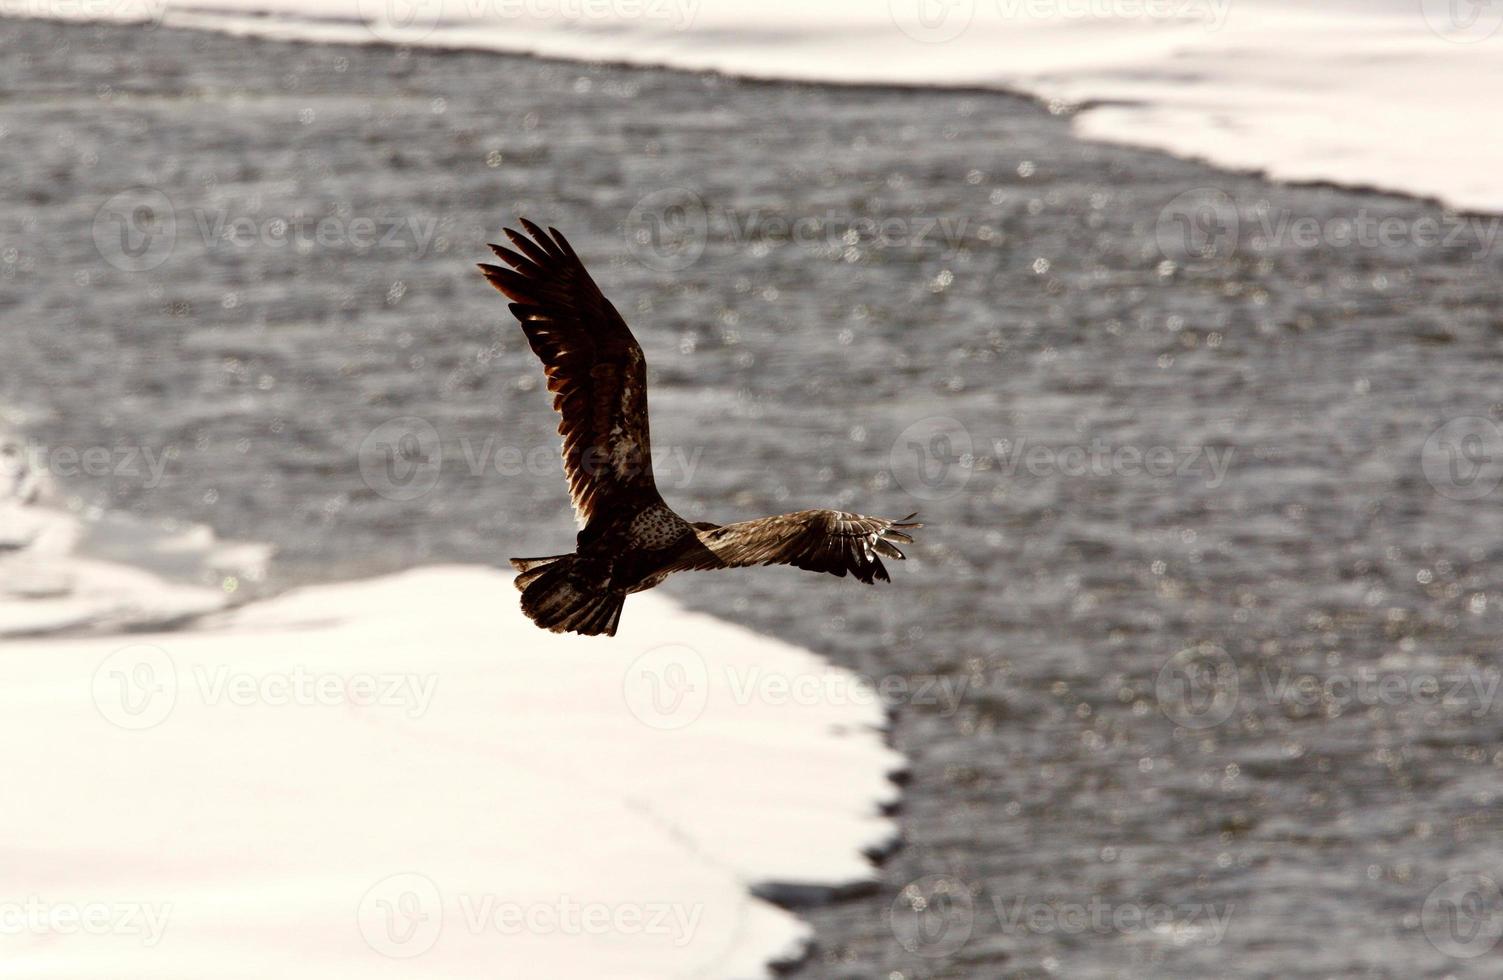 águia careca voando sobre o rio foto